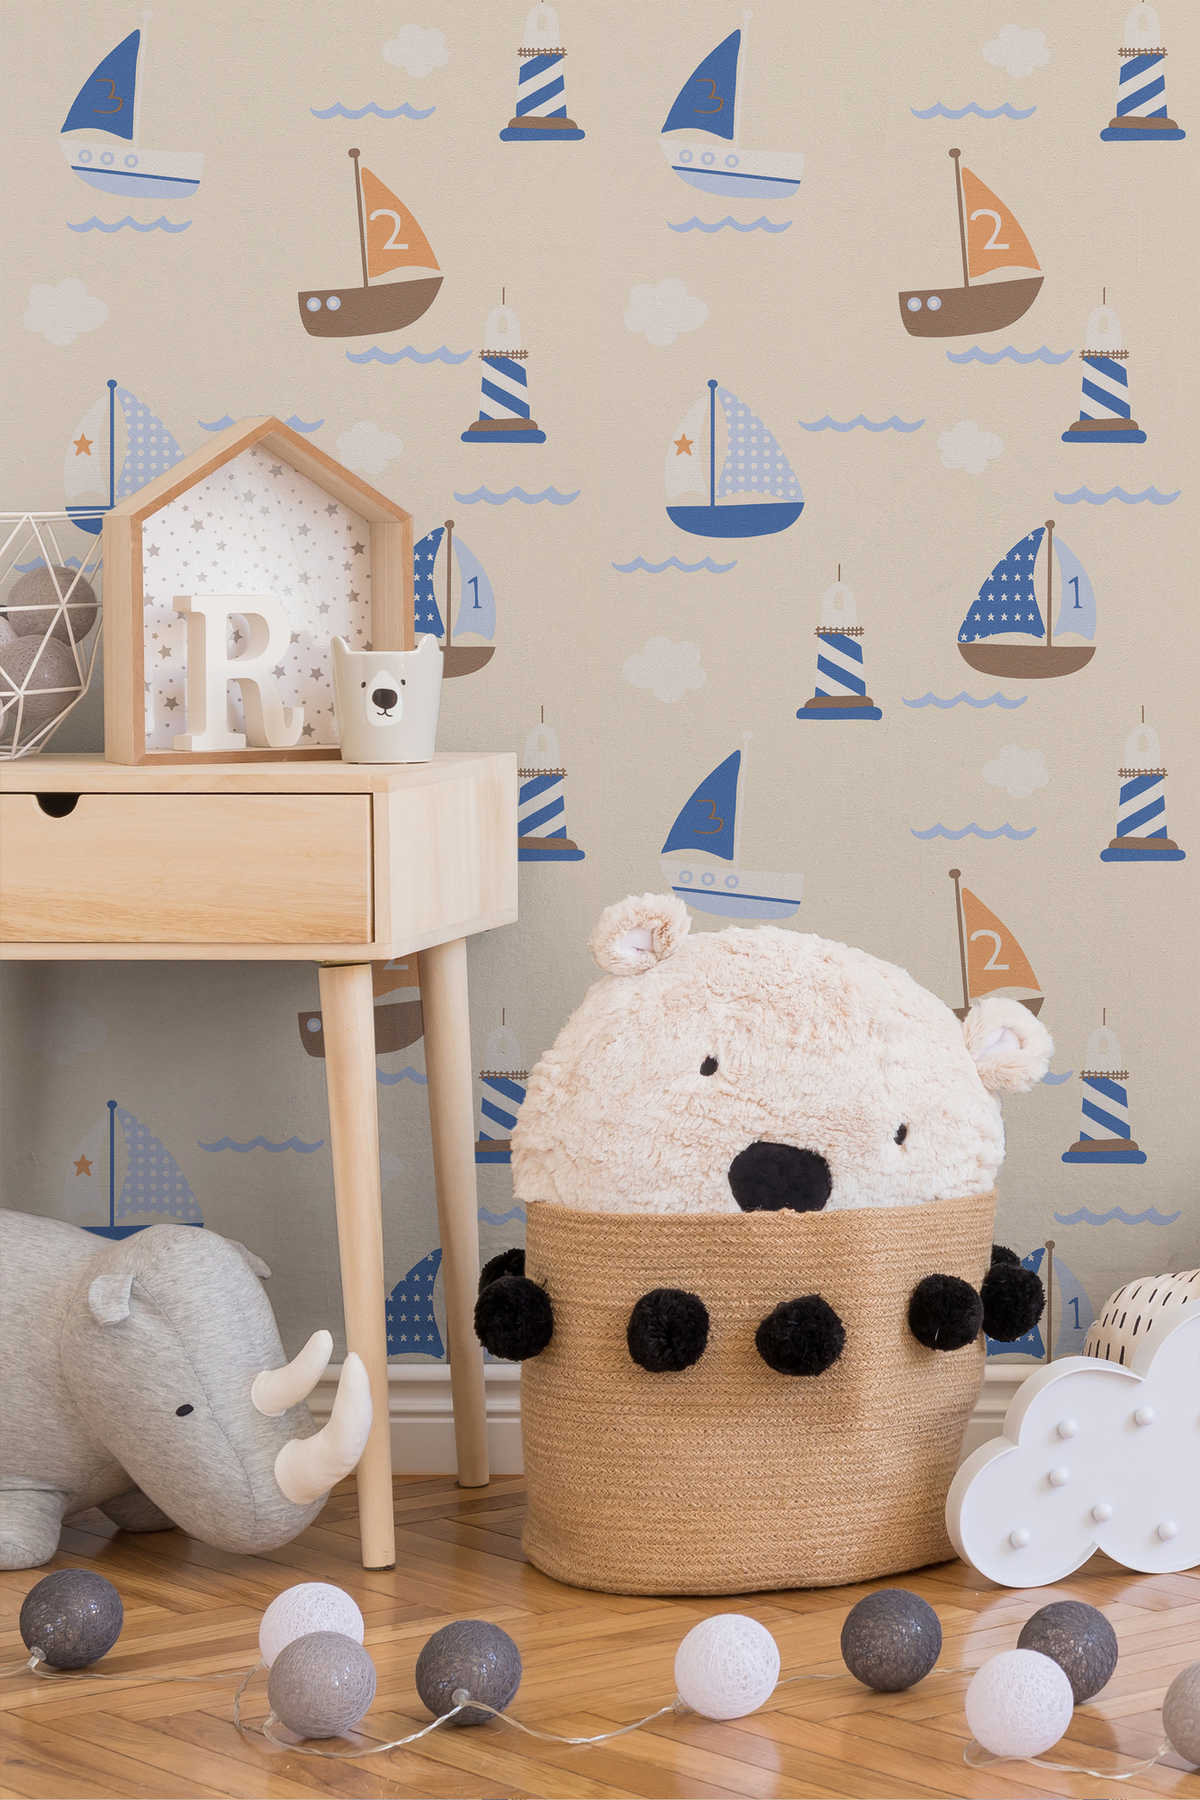             Kinderkamer behang met schip, boot & vuurtoren - blauw, beige
        